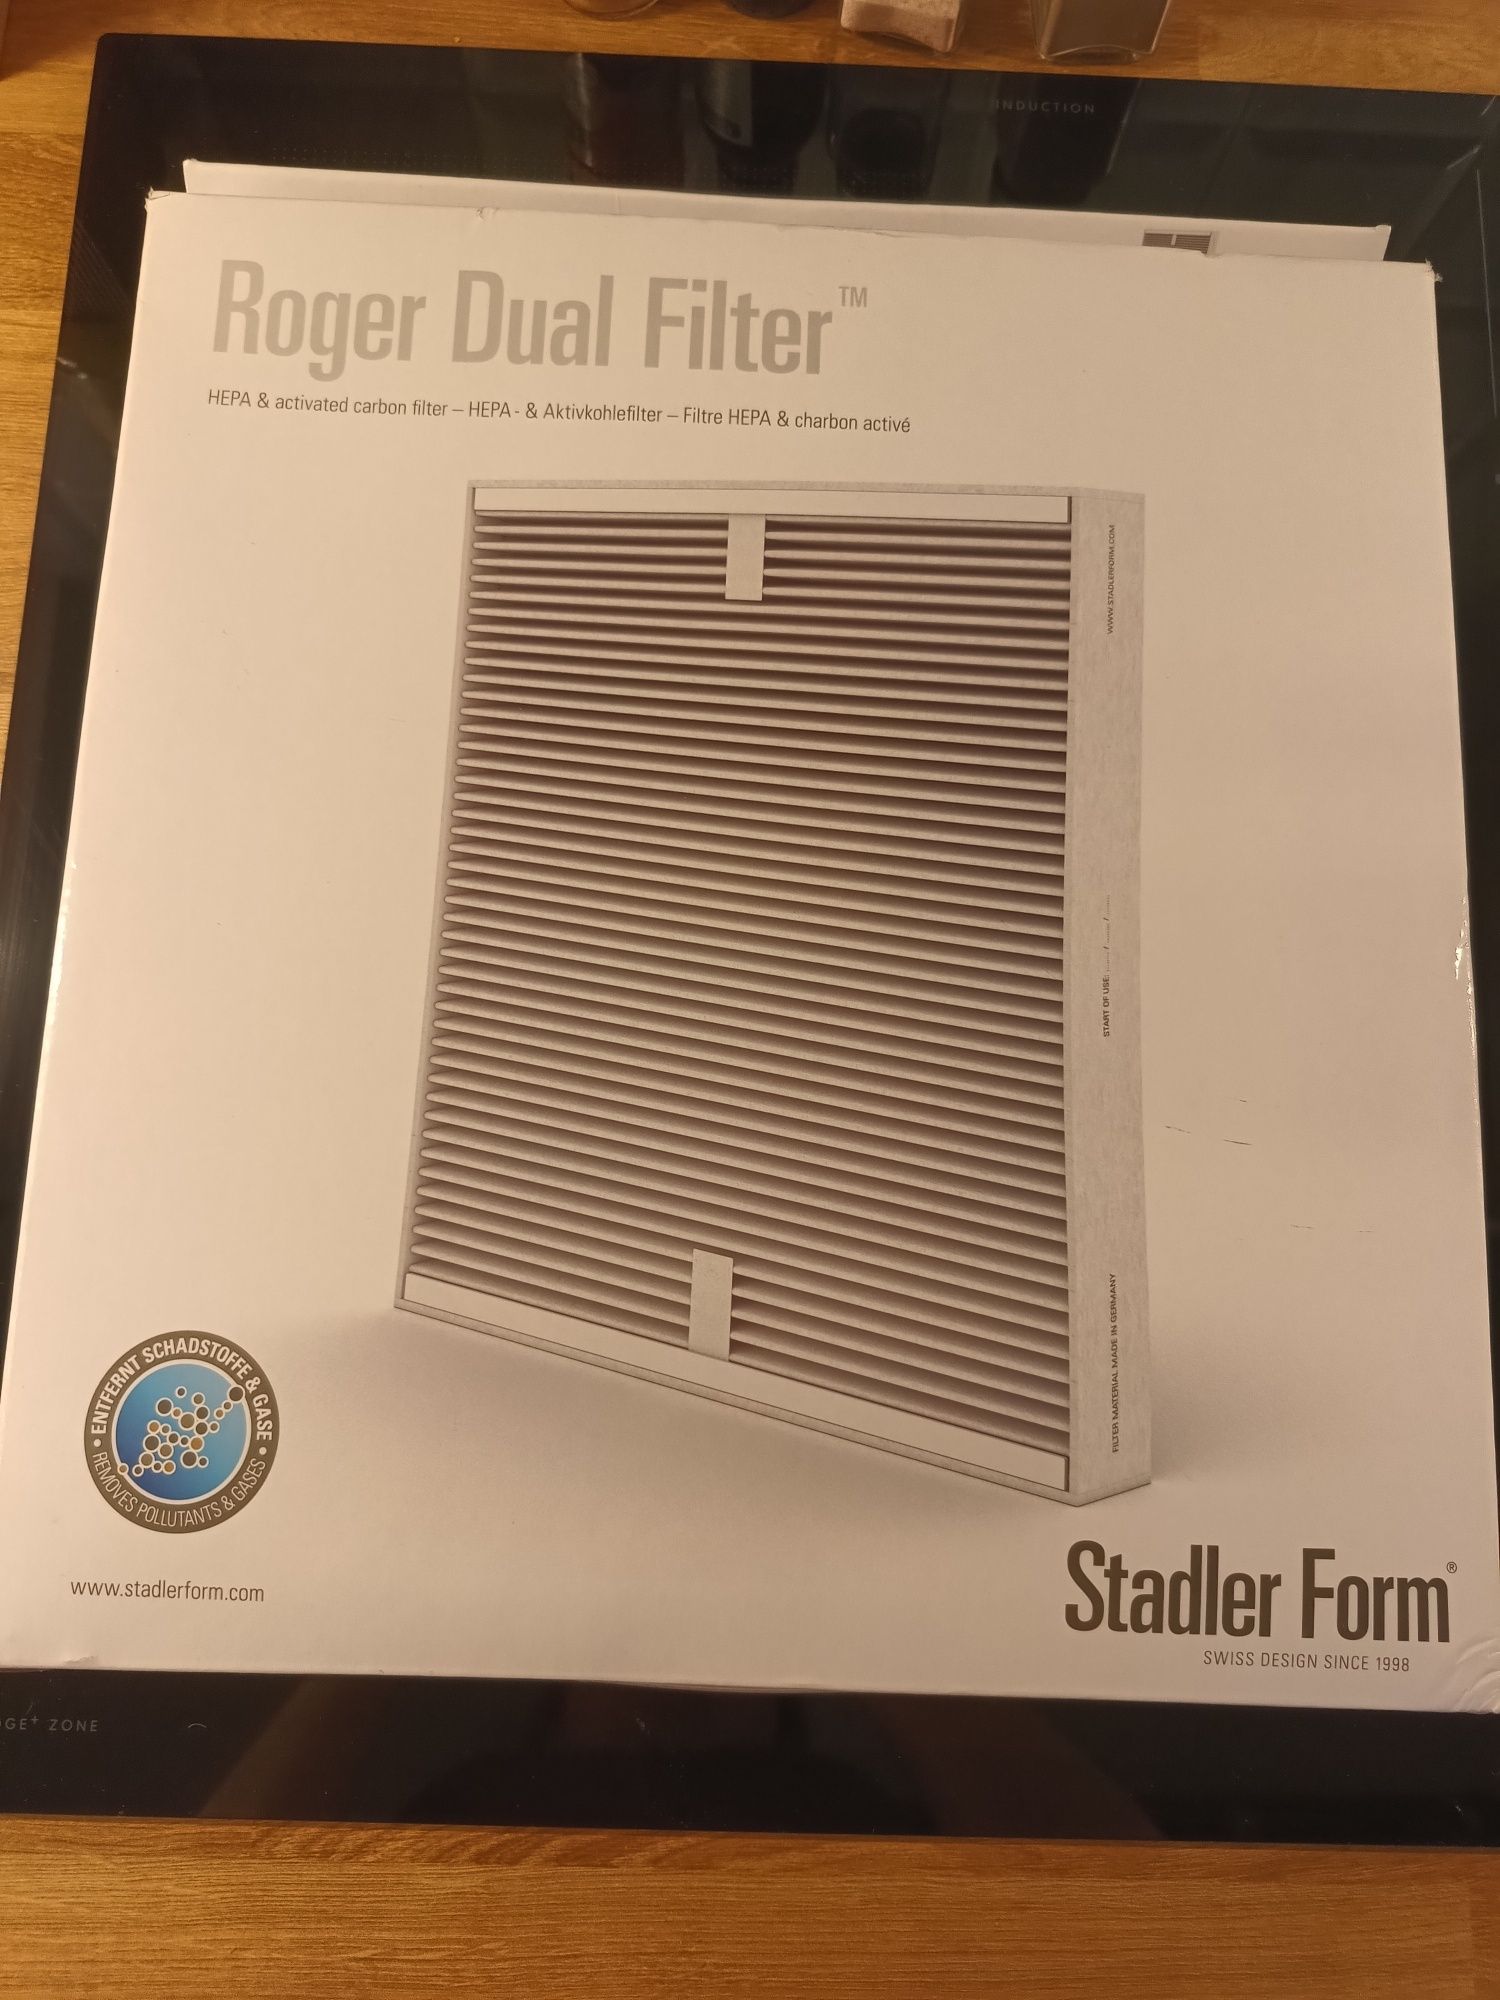 Filtr do oczyszczacza Roger Dual Filter